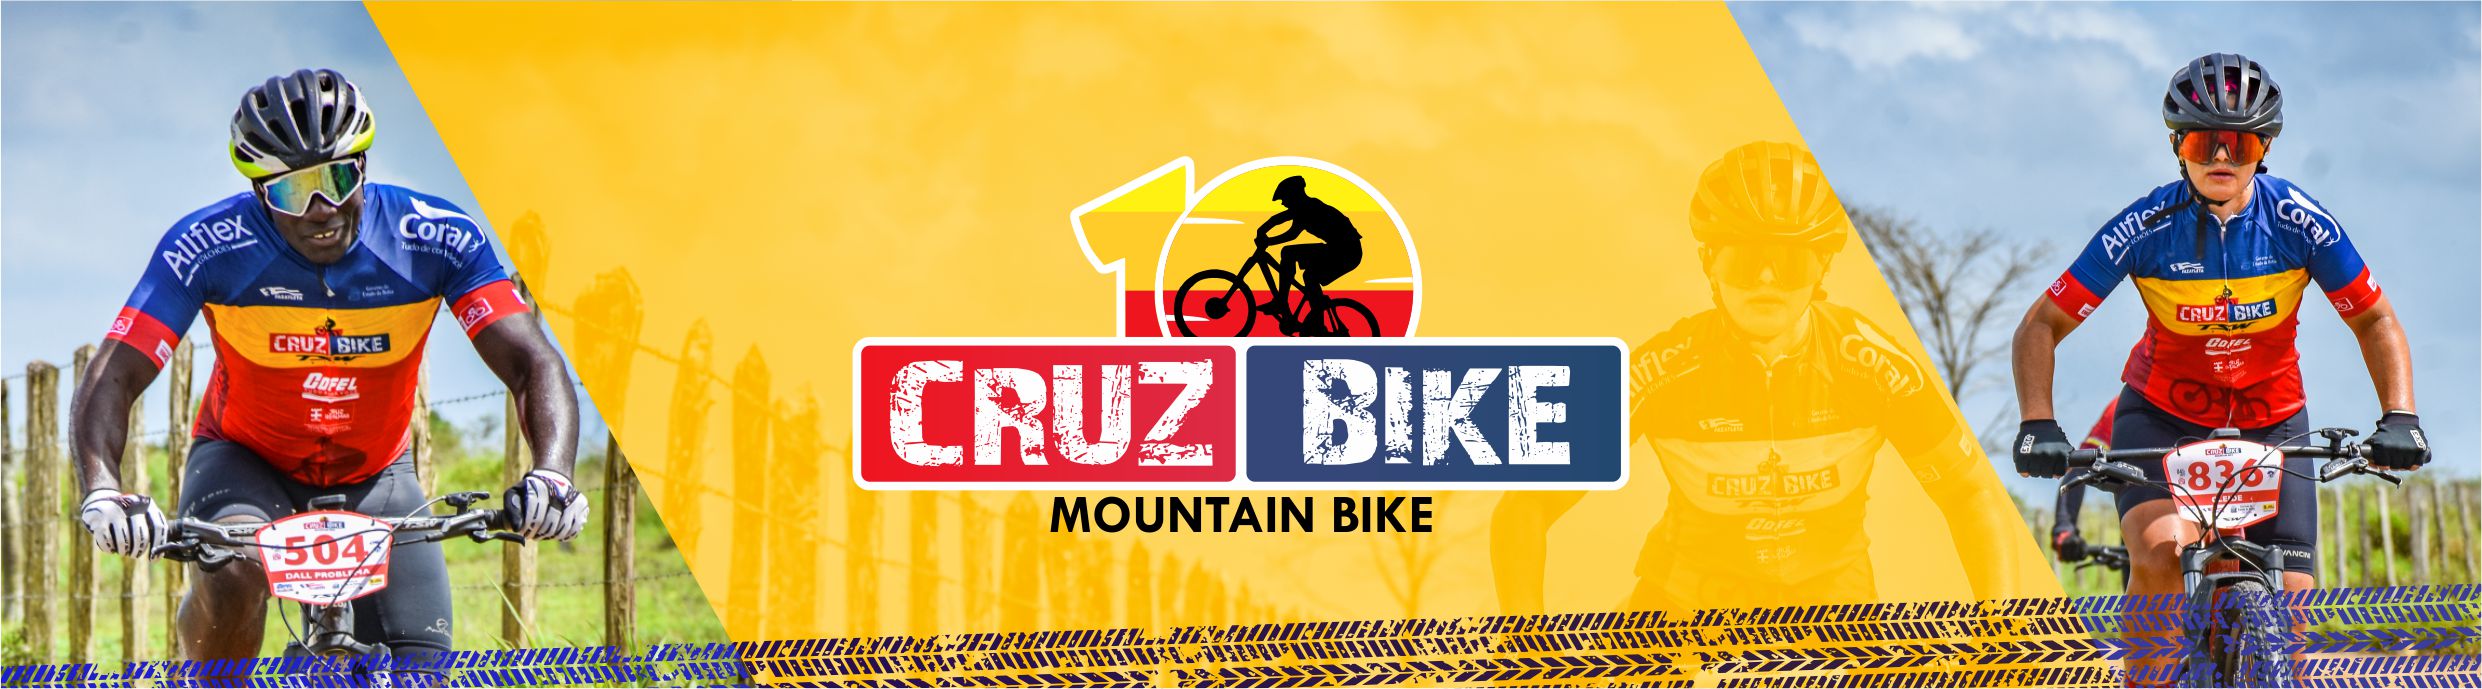 Cruz Bike